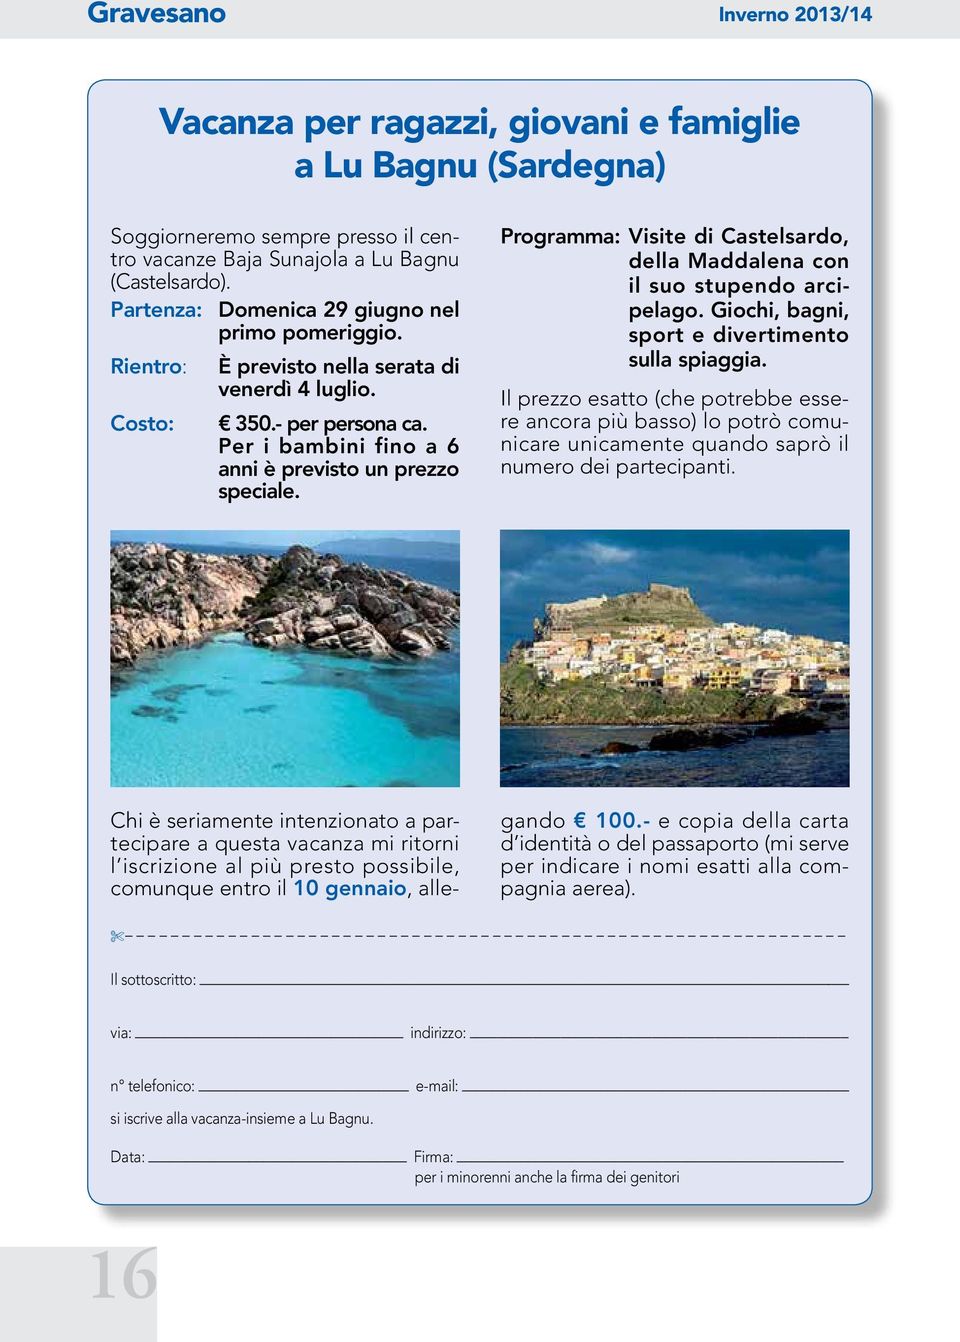 Programma: Visite di Castelsardo, della Maddalena con il suo stupendo arcipelago. Giochi, bagni, sport e divertimento sulla spiaggia.